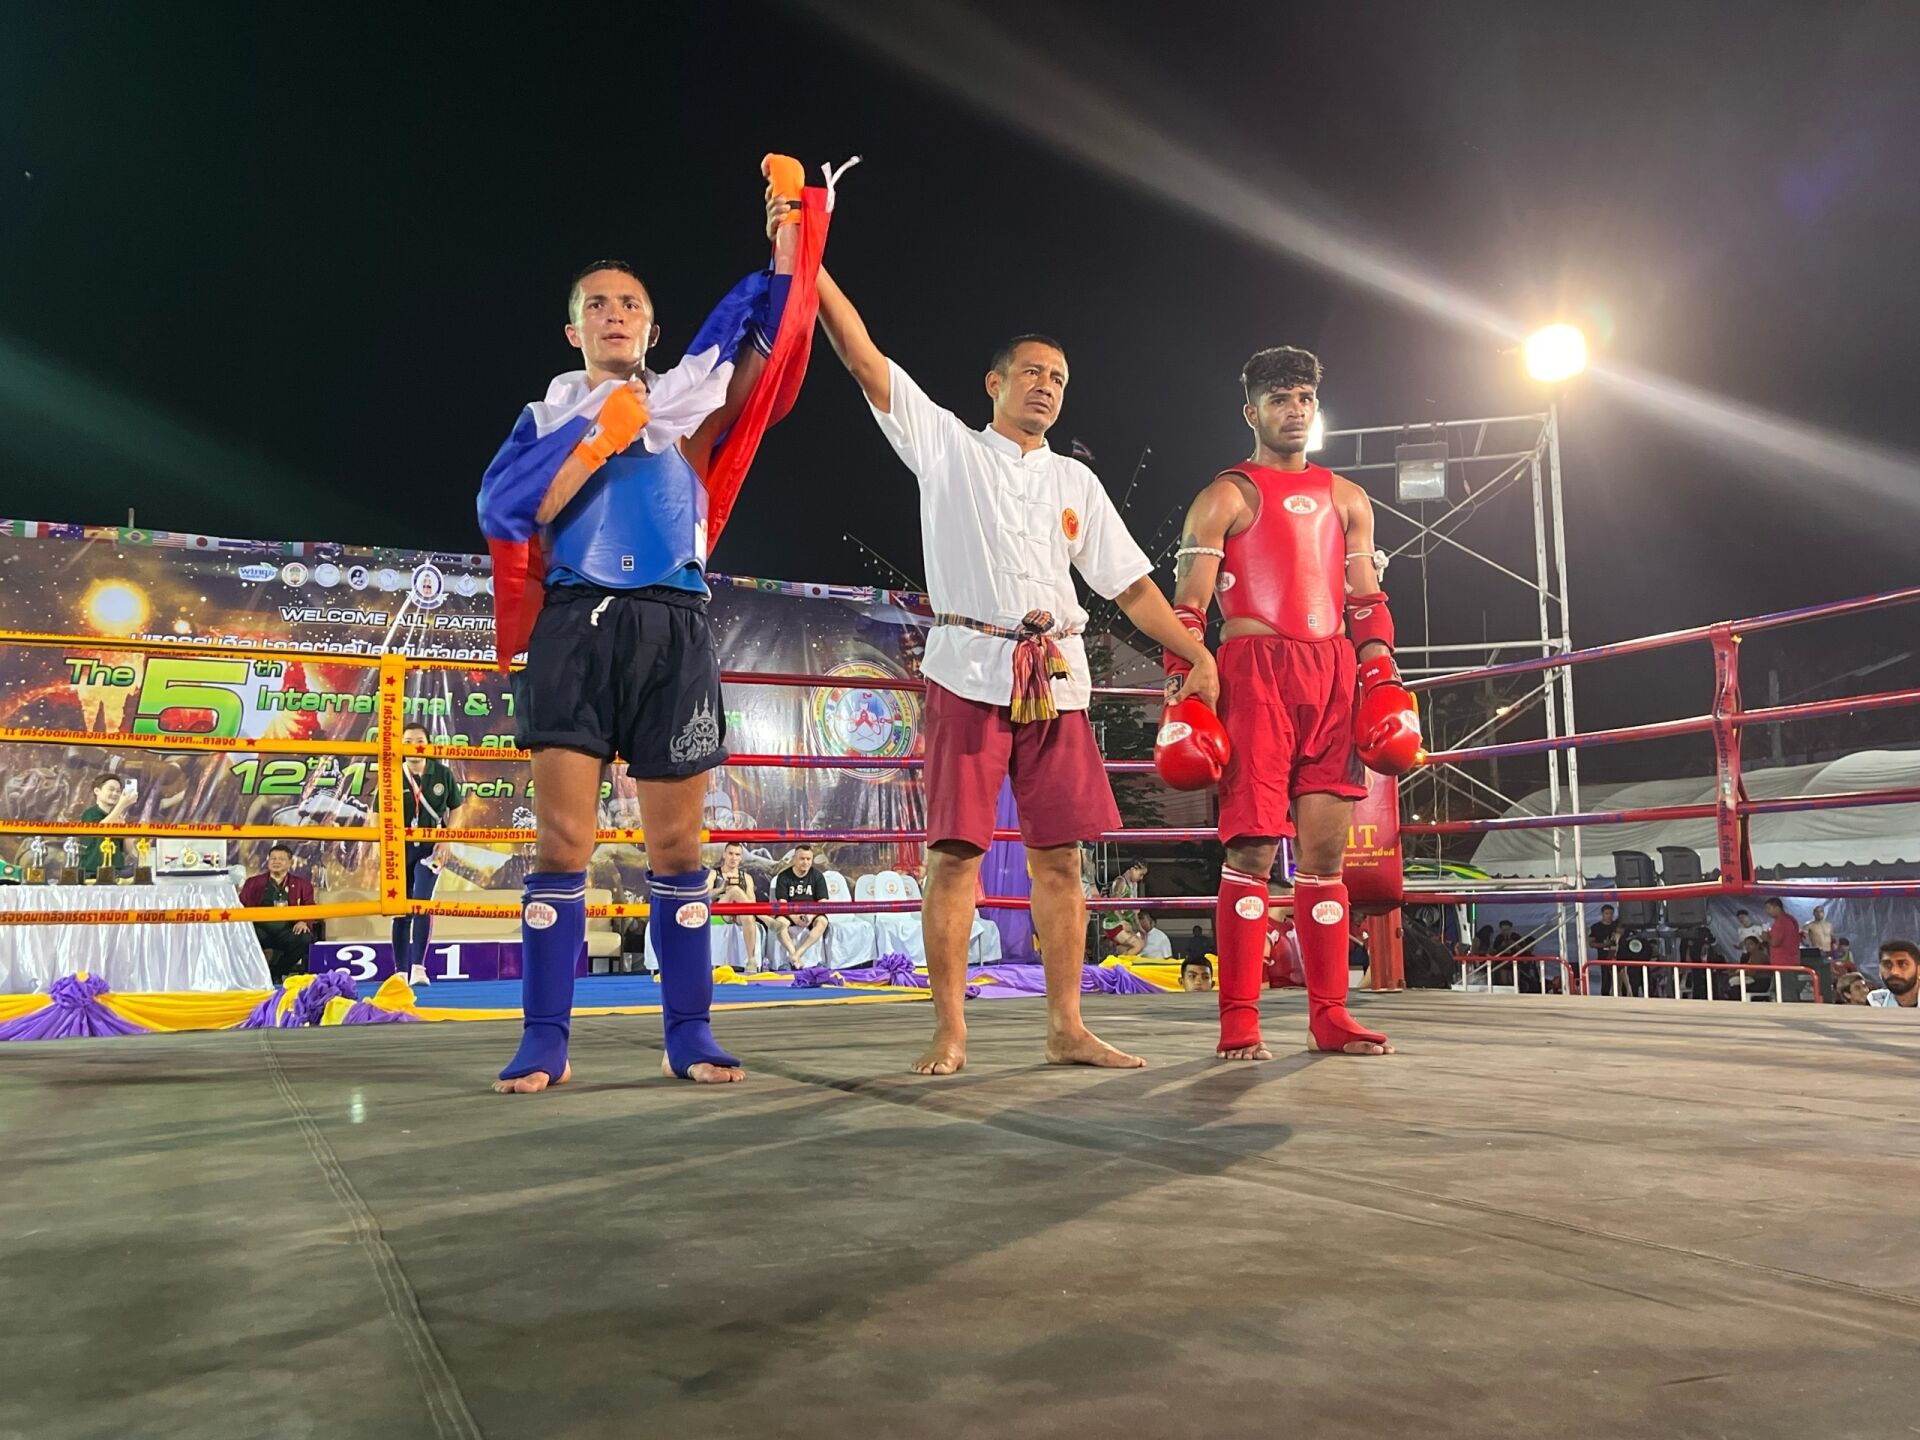 «Я думал из тебя ничего не получится»: тренер о подростке из Челнов, ставшем чемпионом мира по тайскому боксу